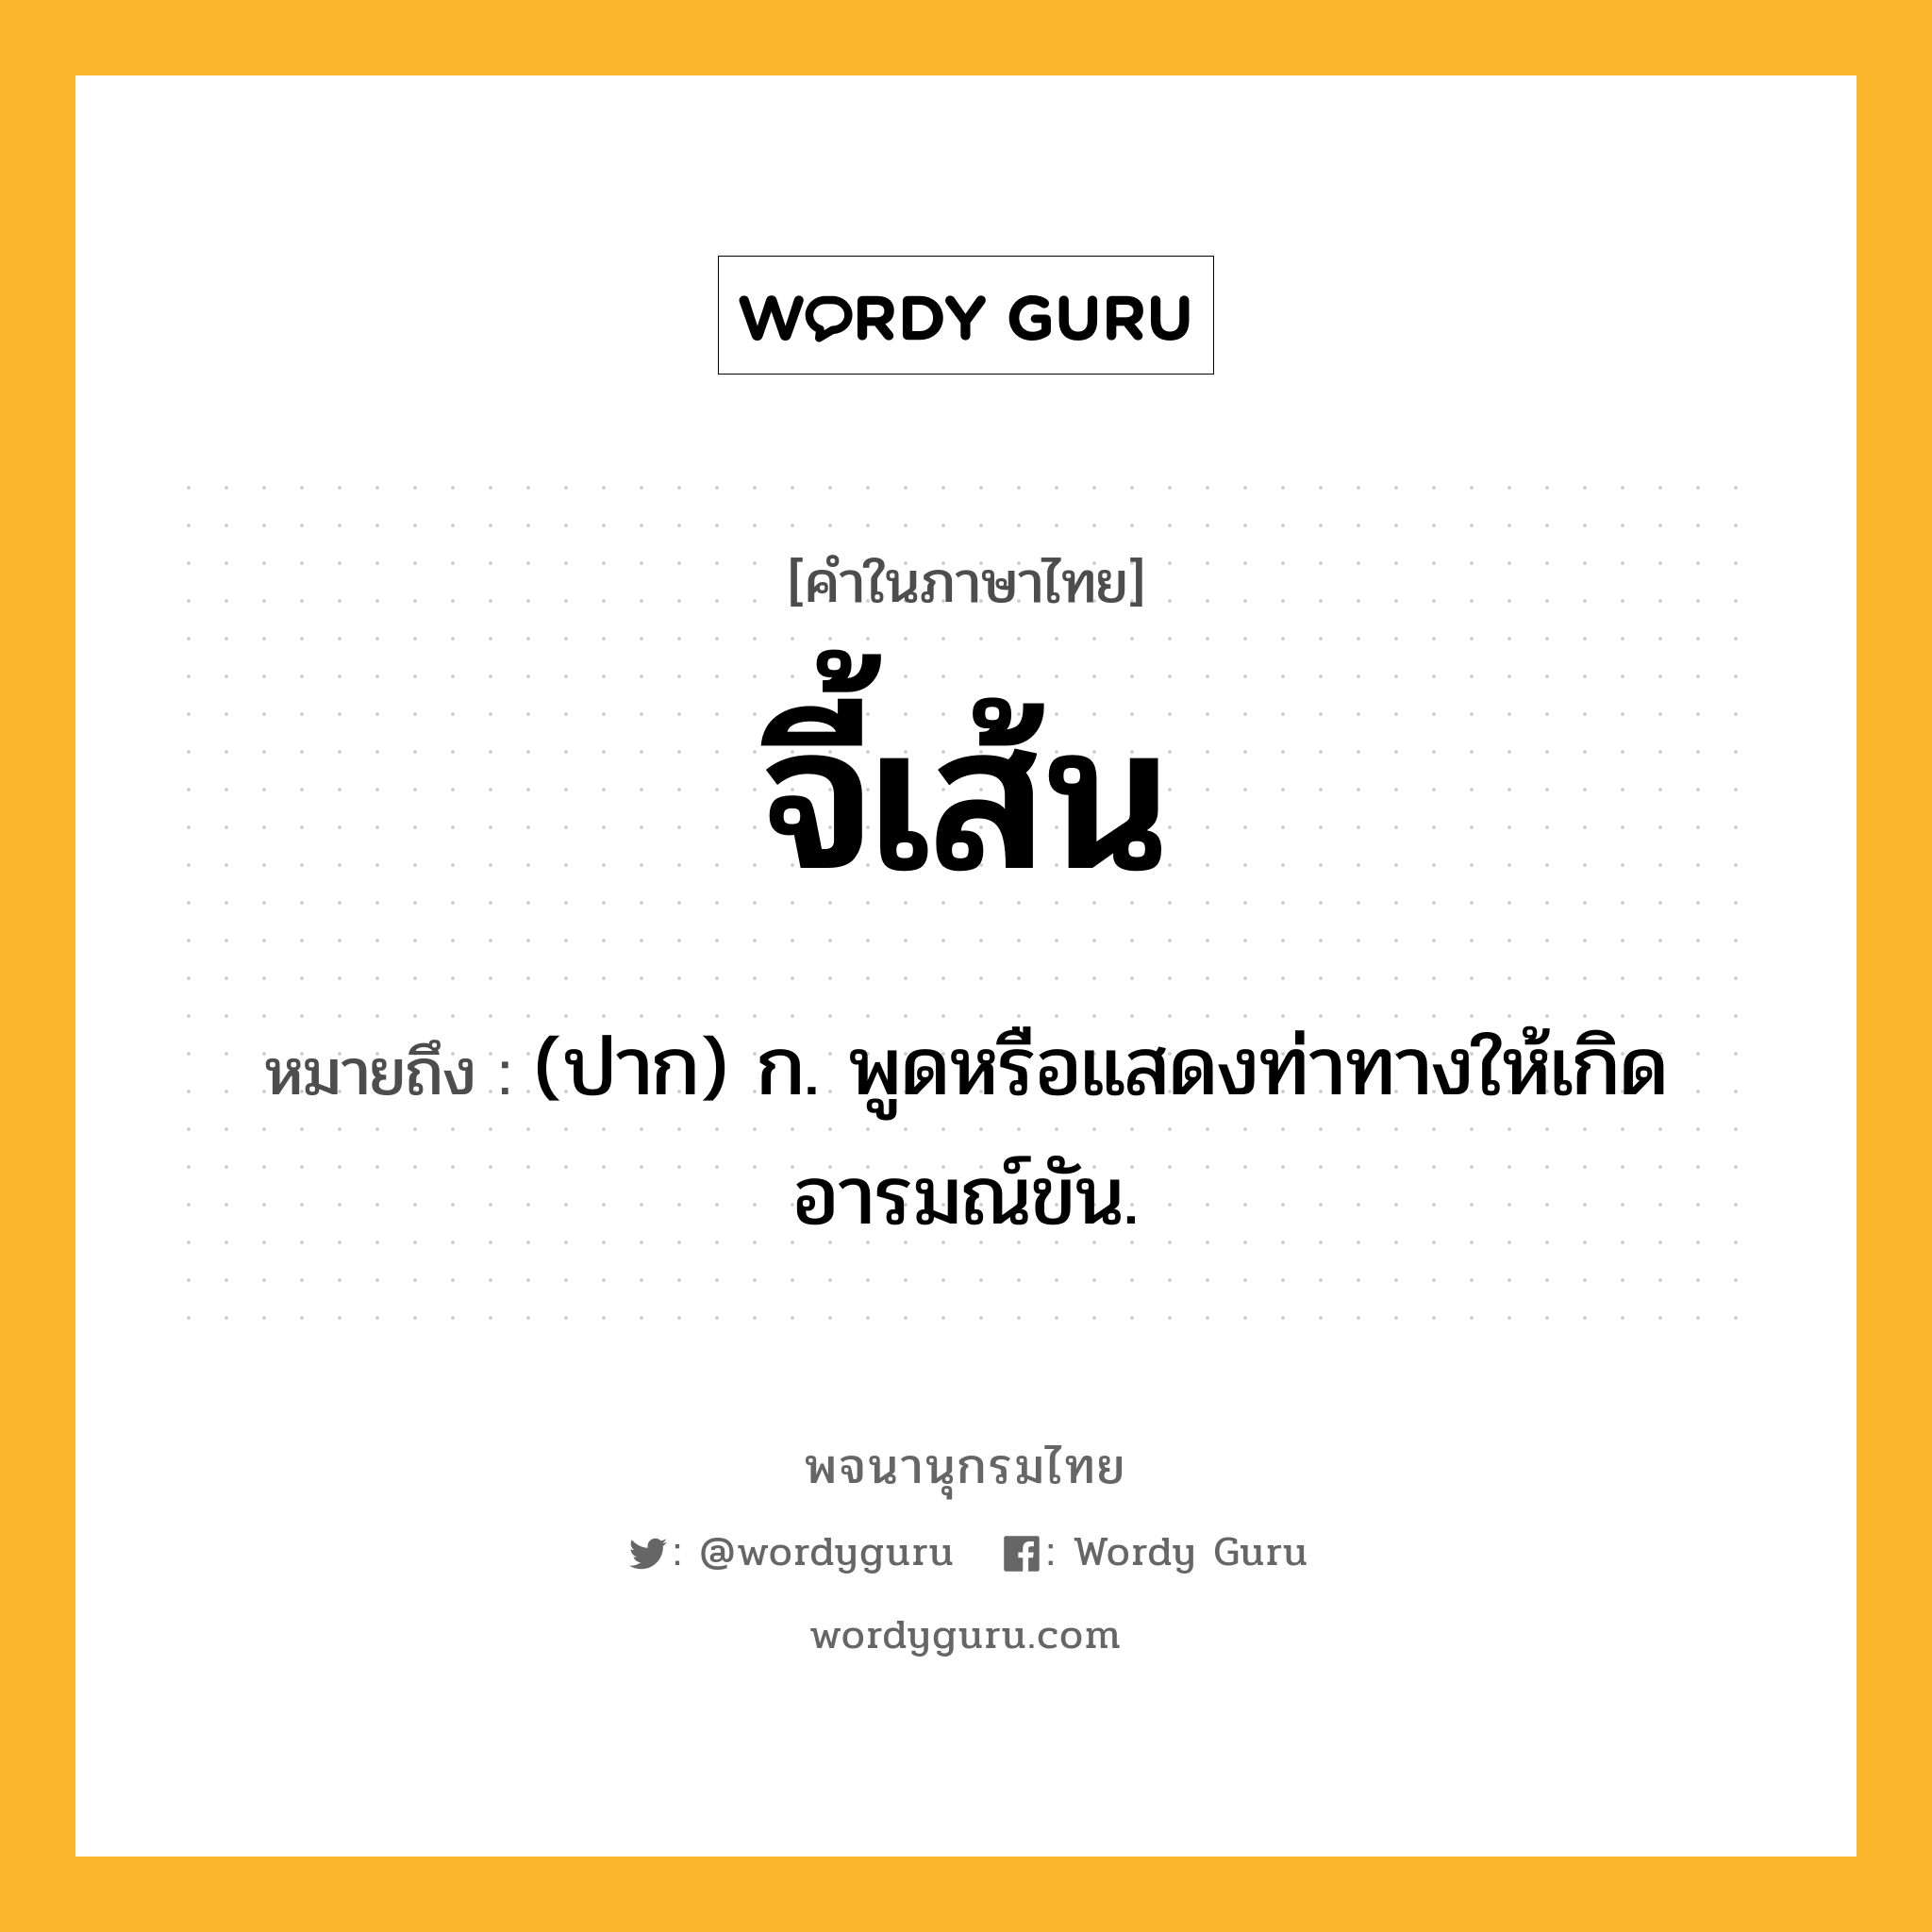 จี้เส้น หมายถึงอะไร?, คำในภาษาไทย จี้เส้น หมายถึง (ปาก) ก. พูดหรือแสดงท่าทางให้เกิดอารมณ์ขัน.